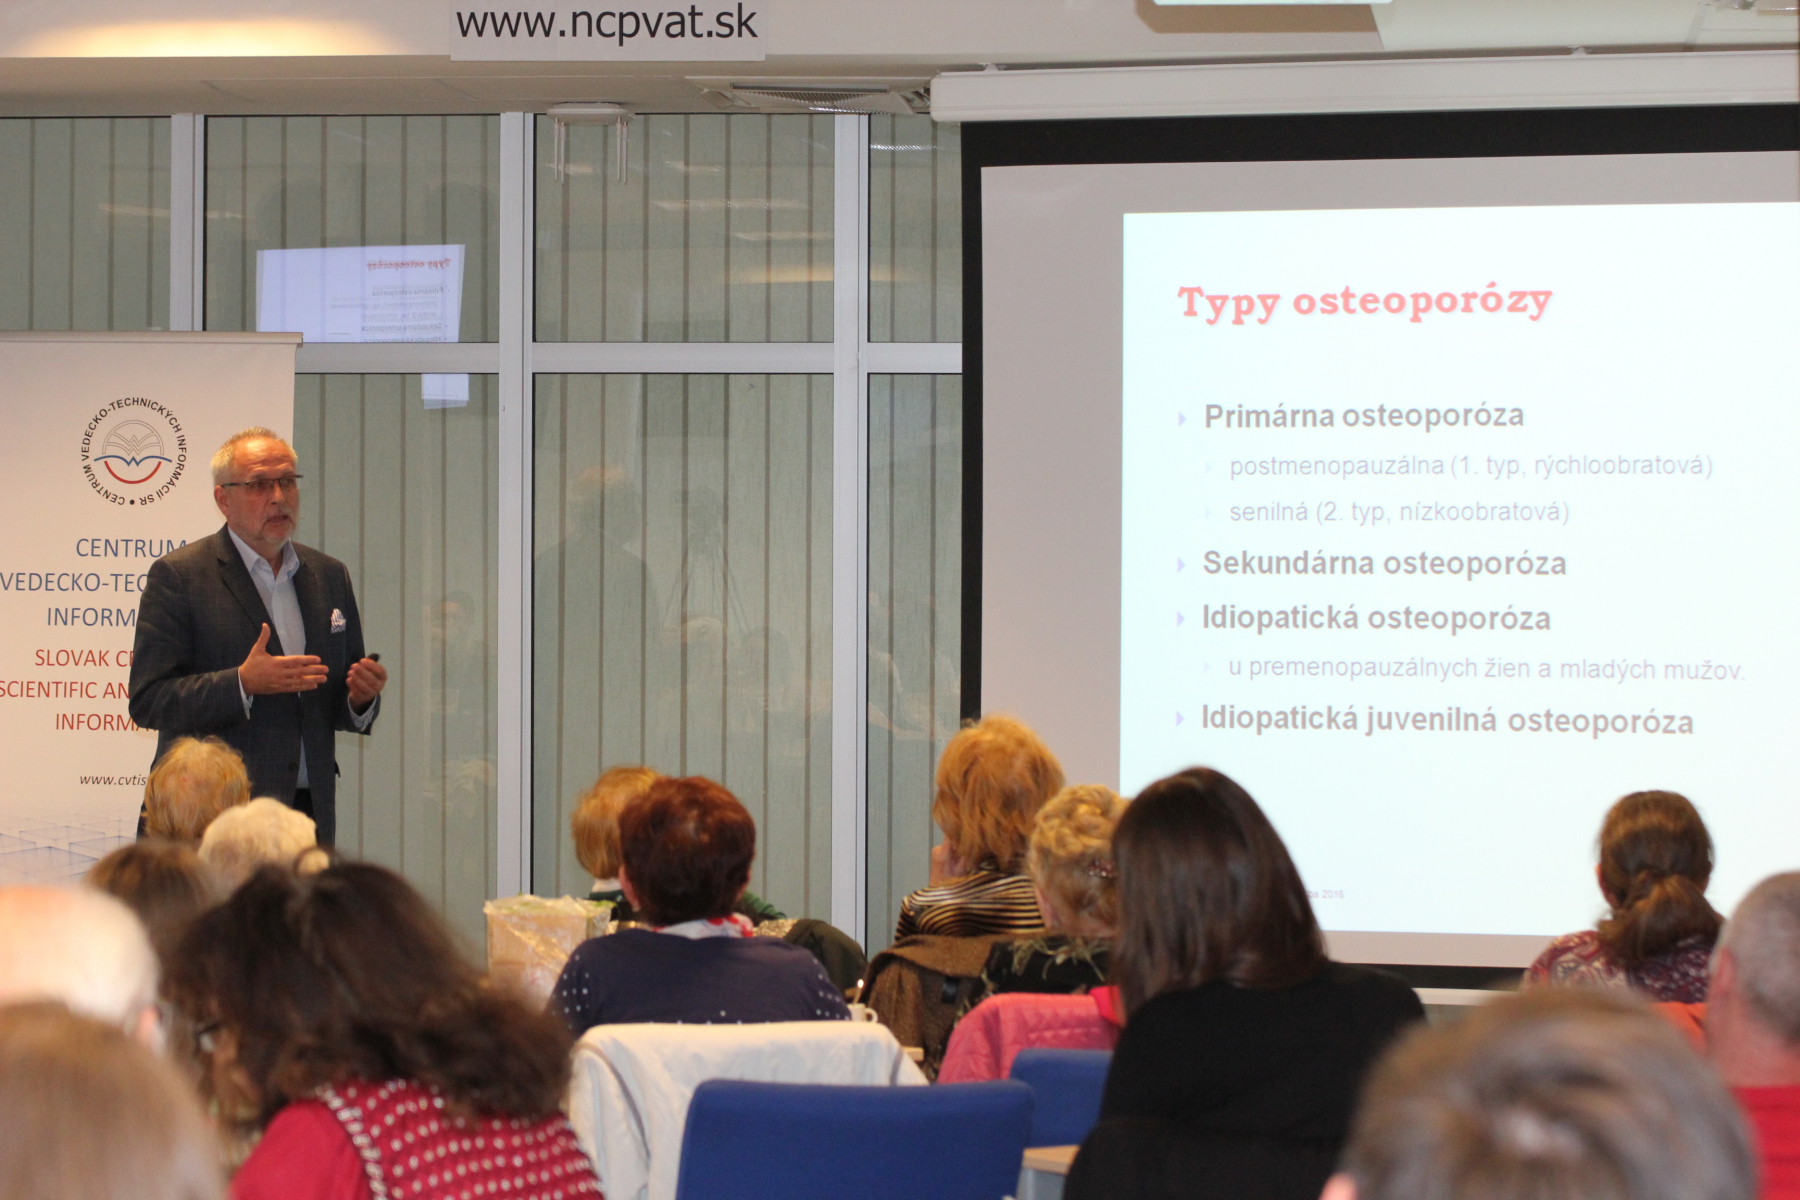 Osteoporóza – Tichý vykrádač kostí – prof. MUDr. Juraj Payer, PhD.